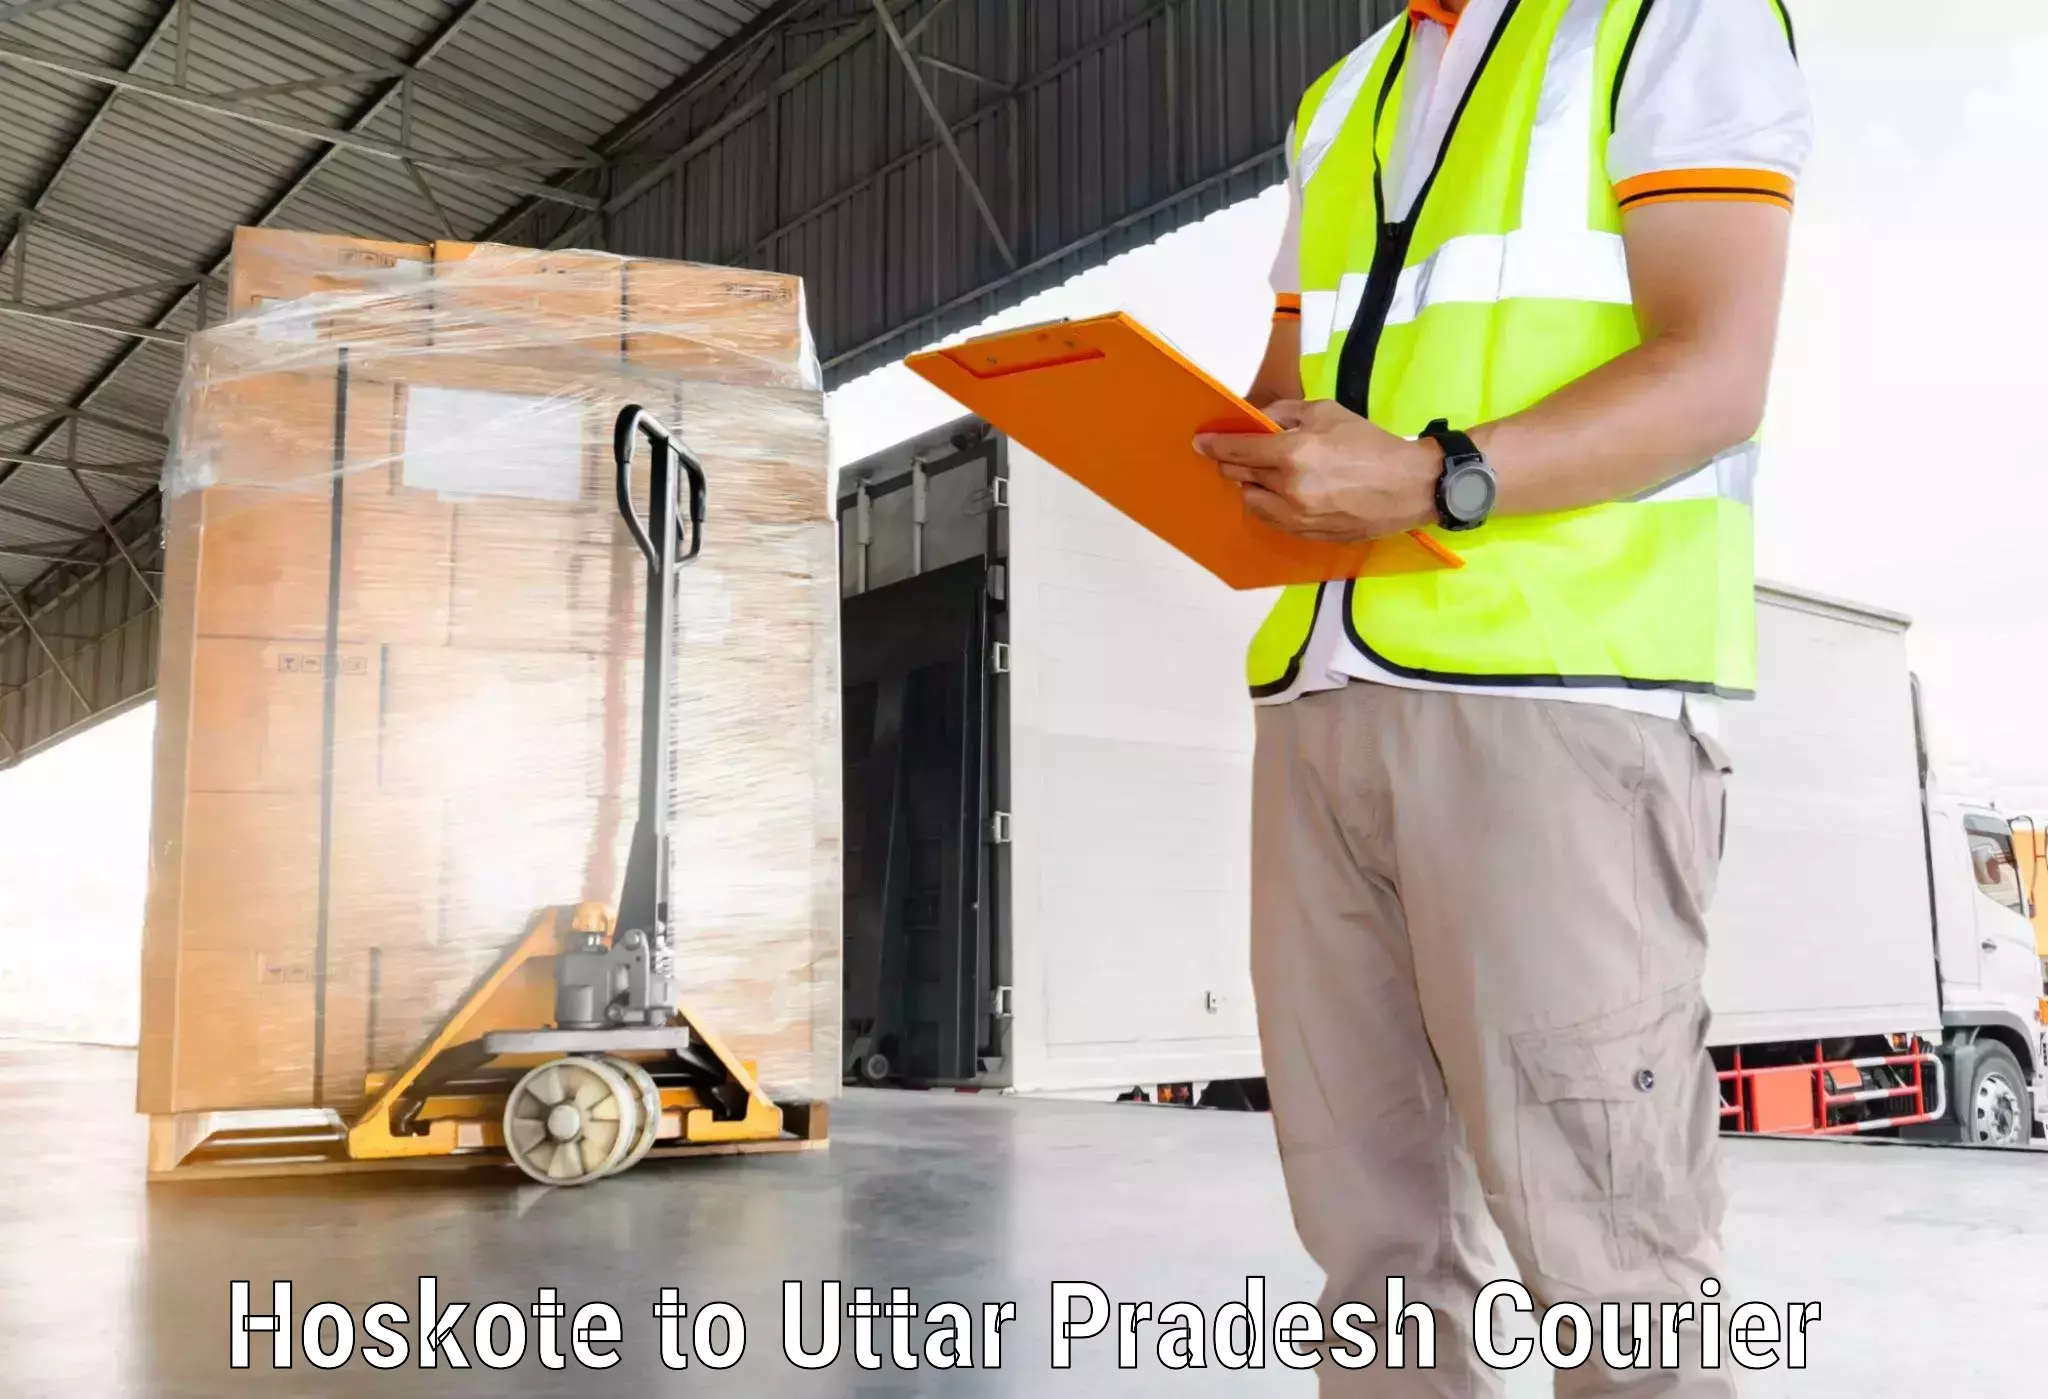 Global logistics network Hoskote to Budhana